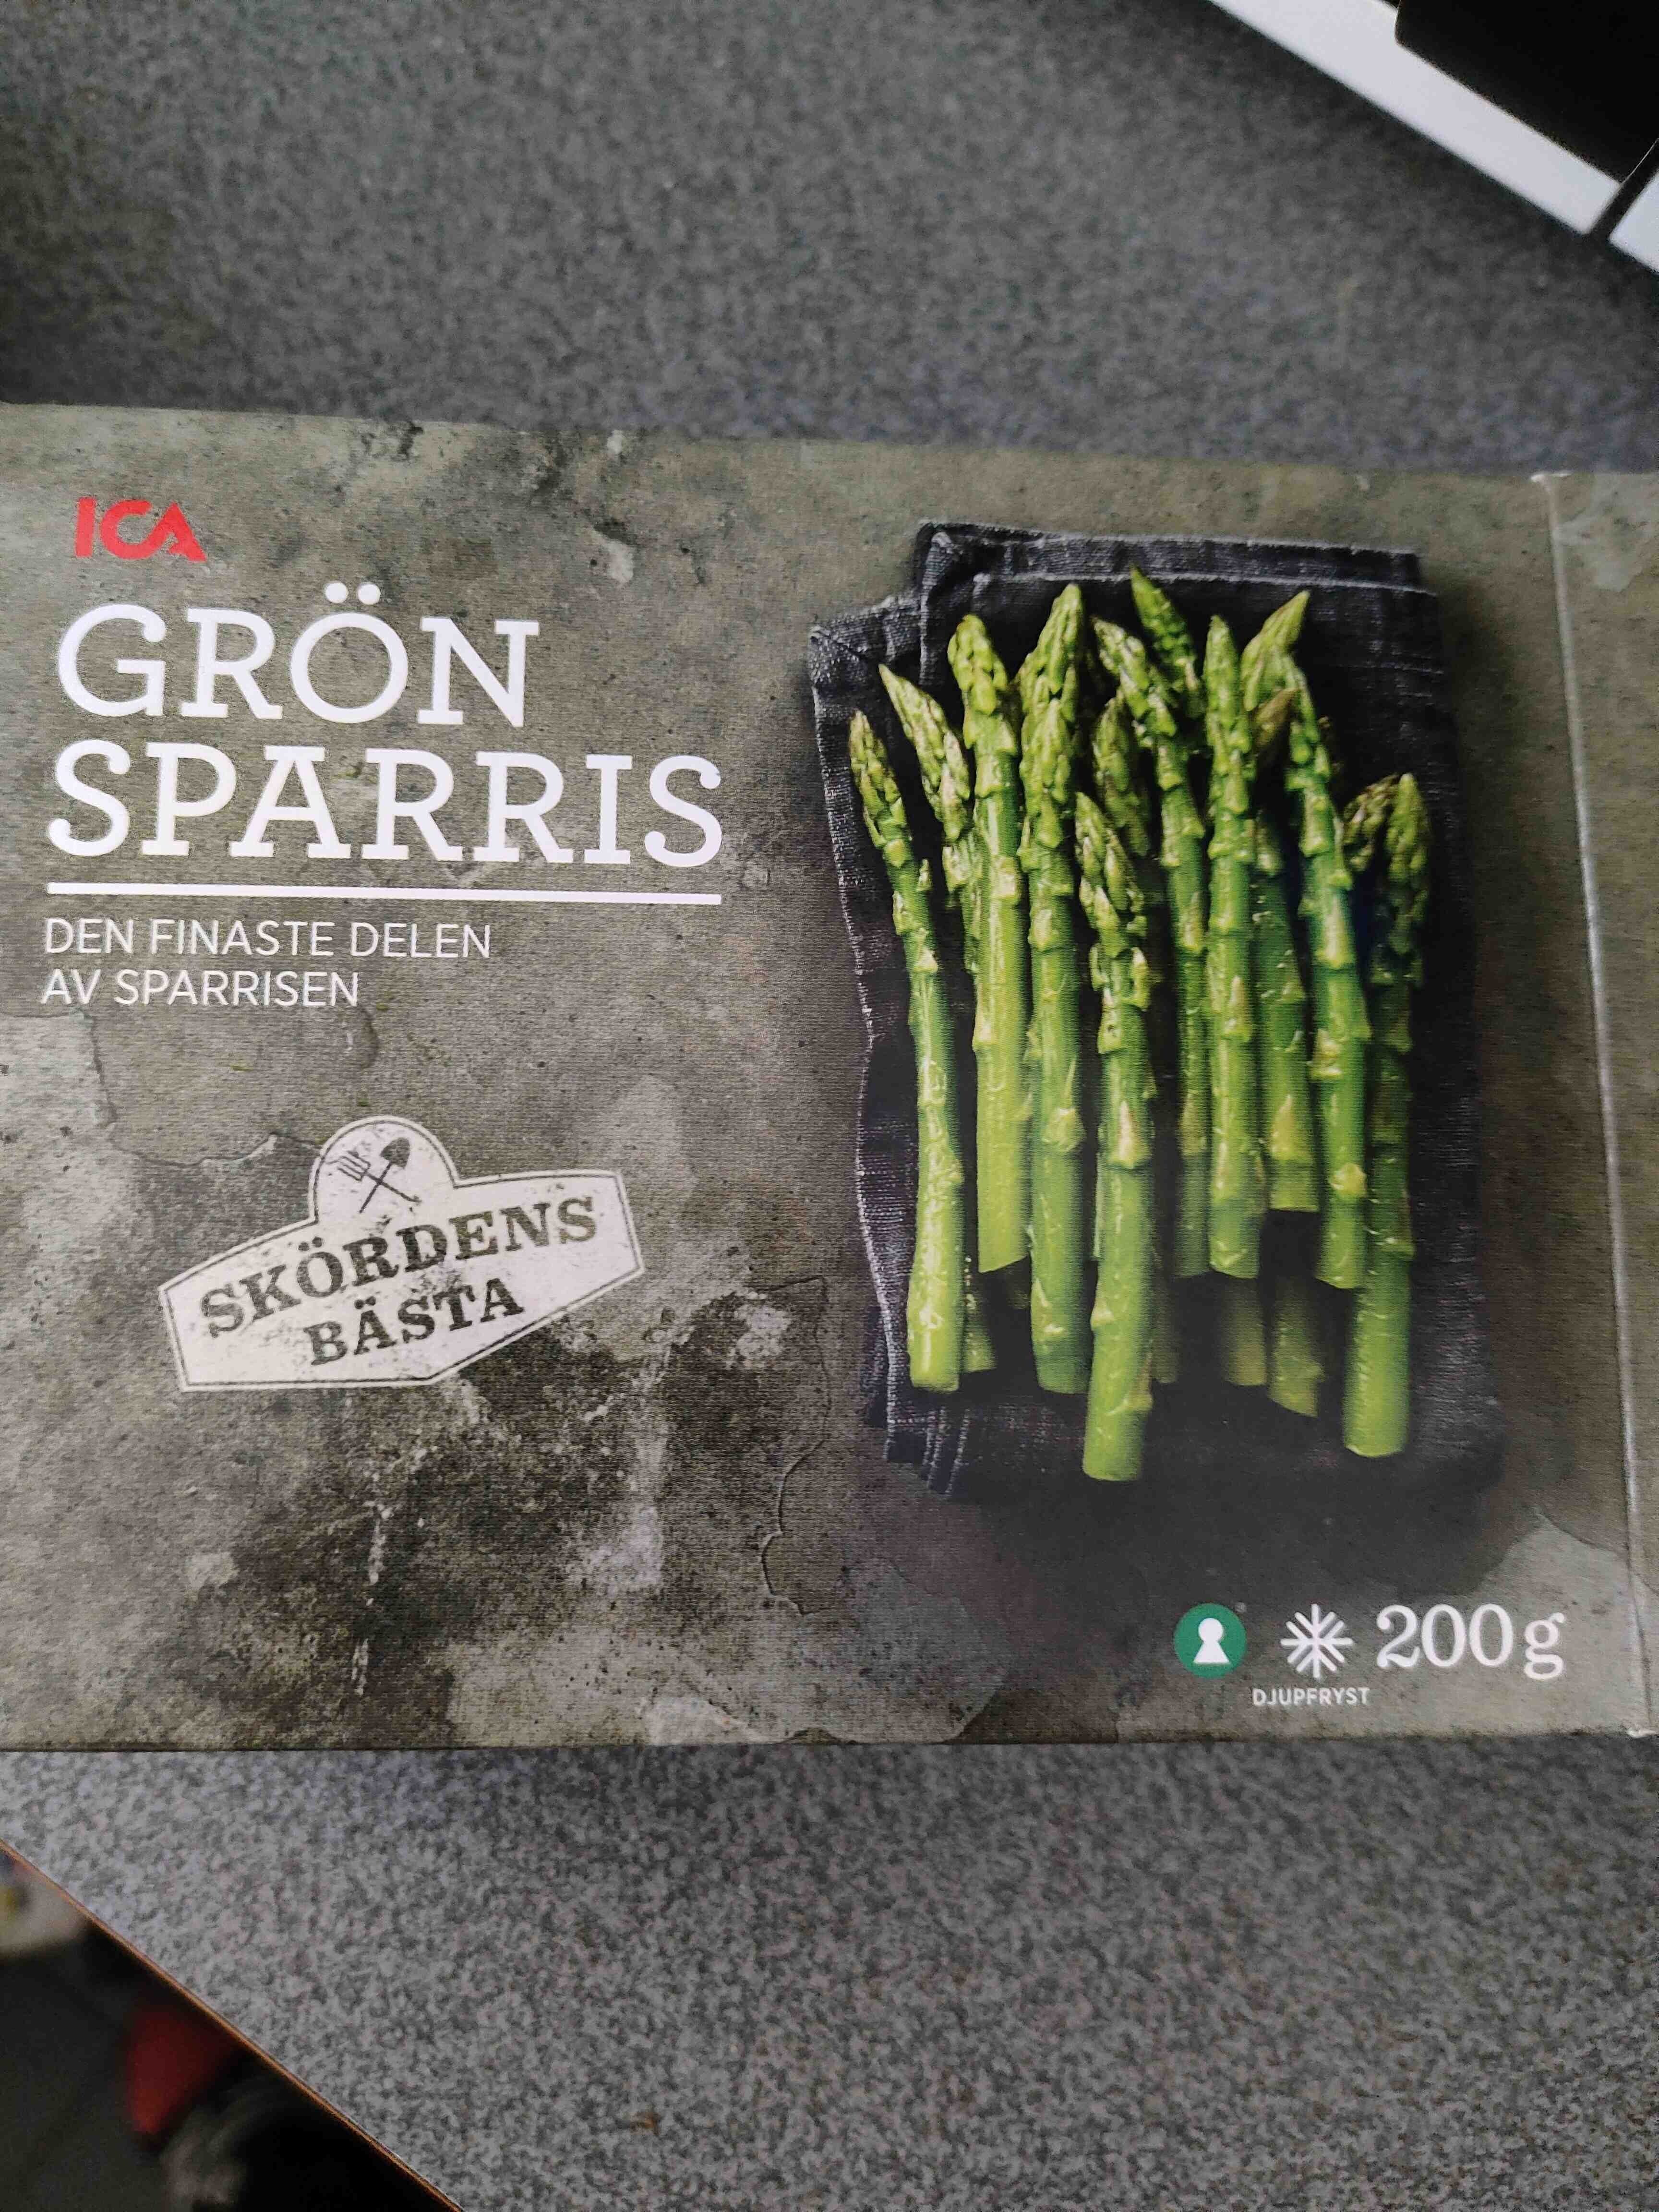 Asparagus - Produkt - en